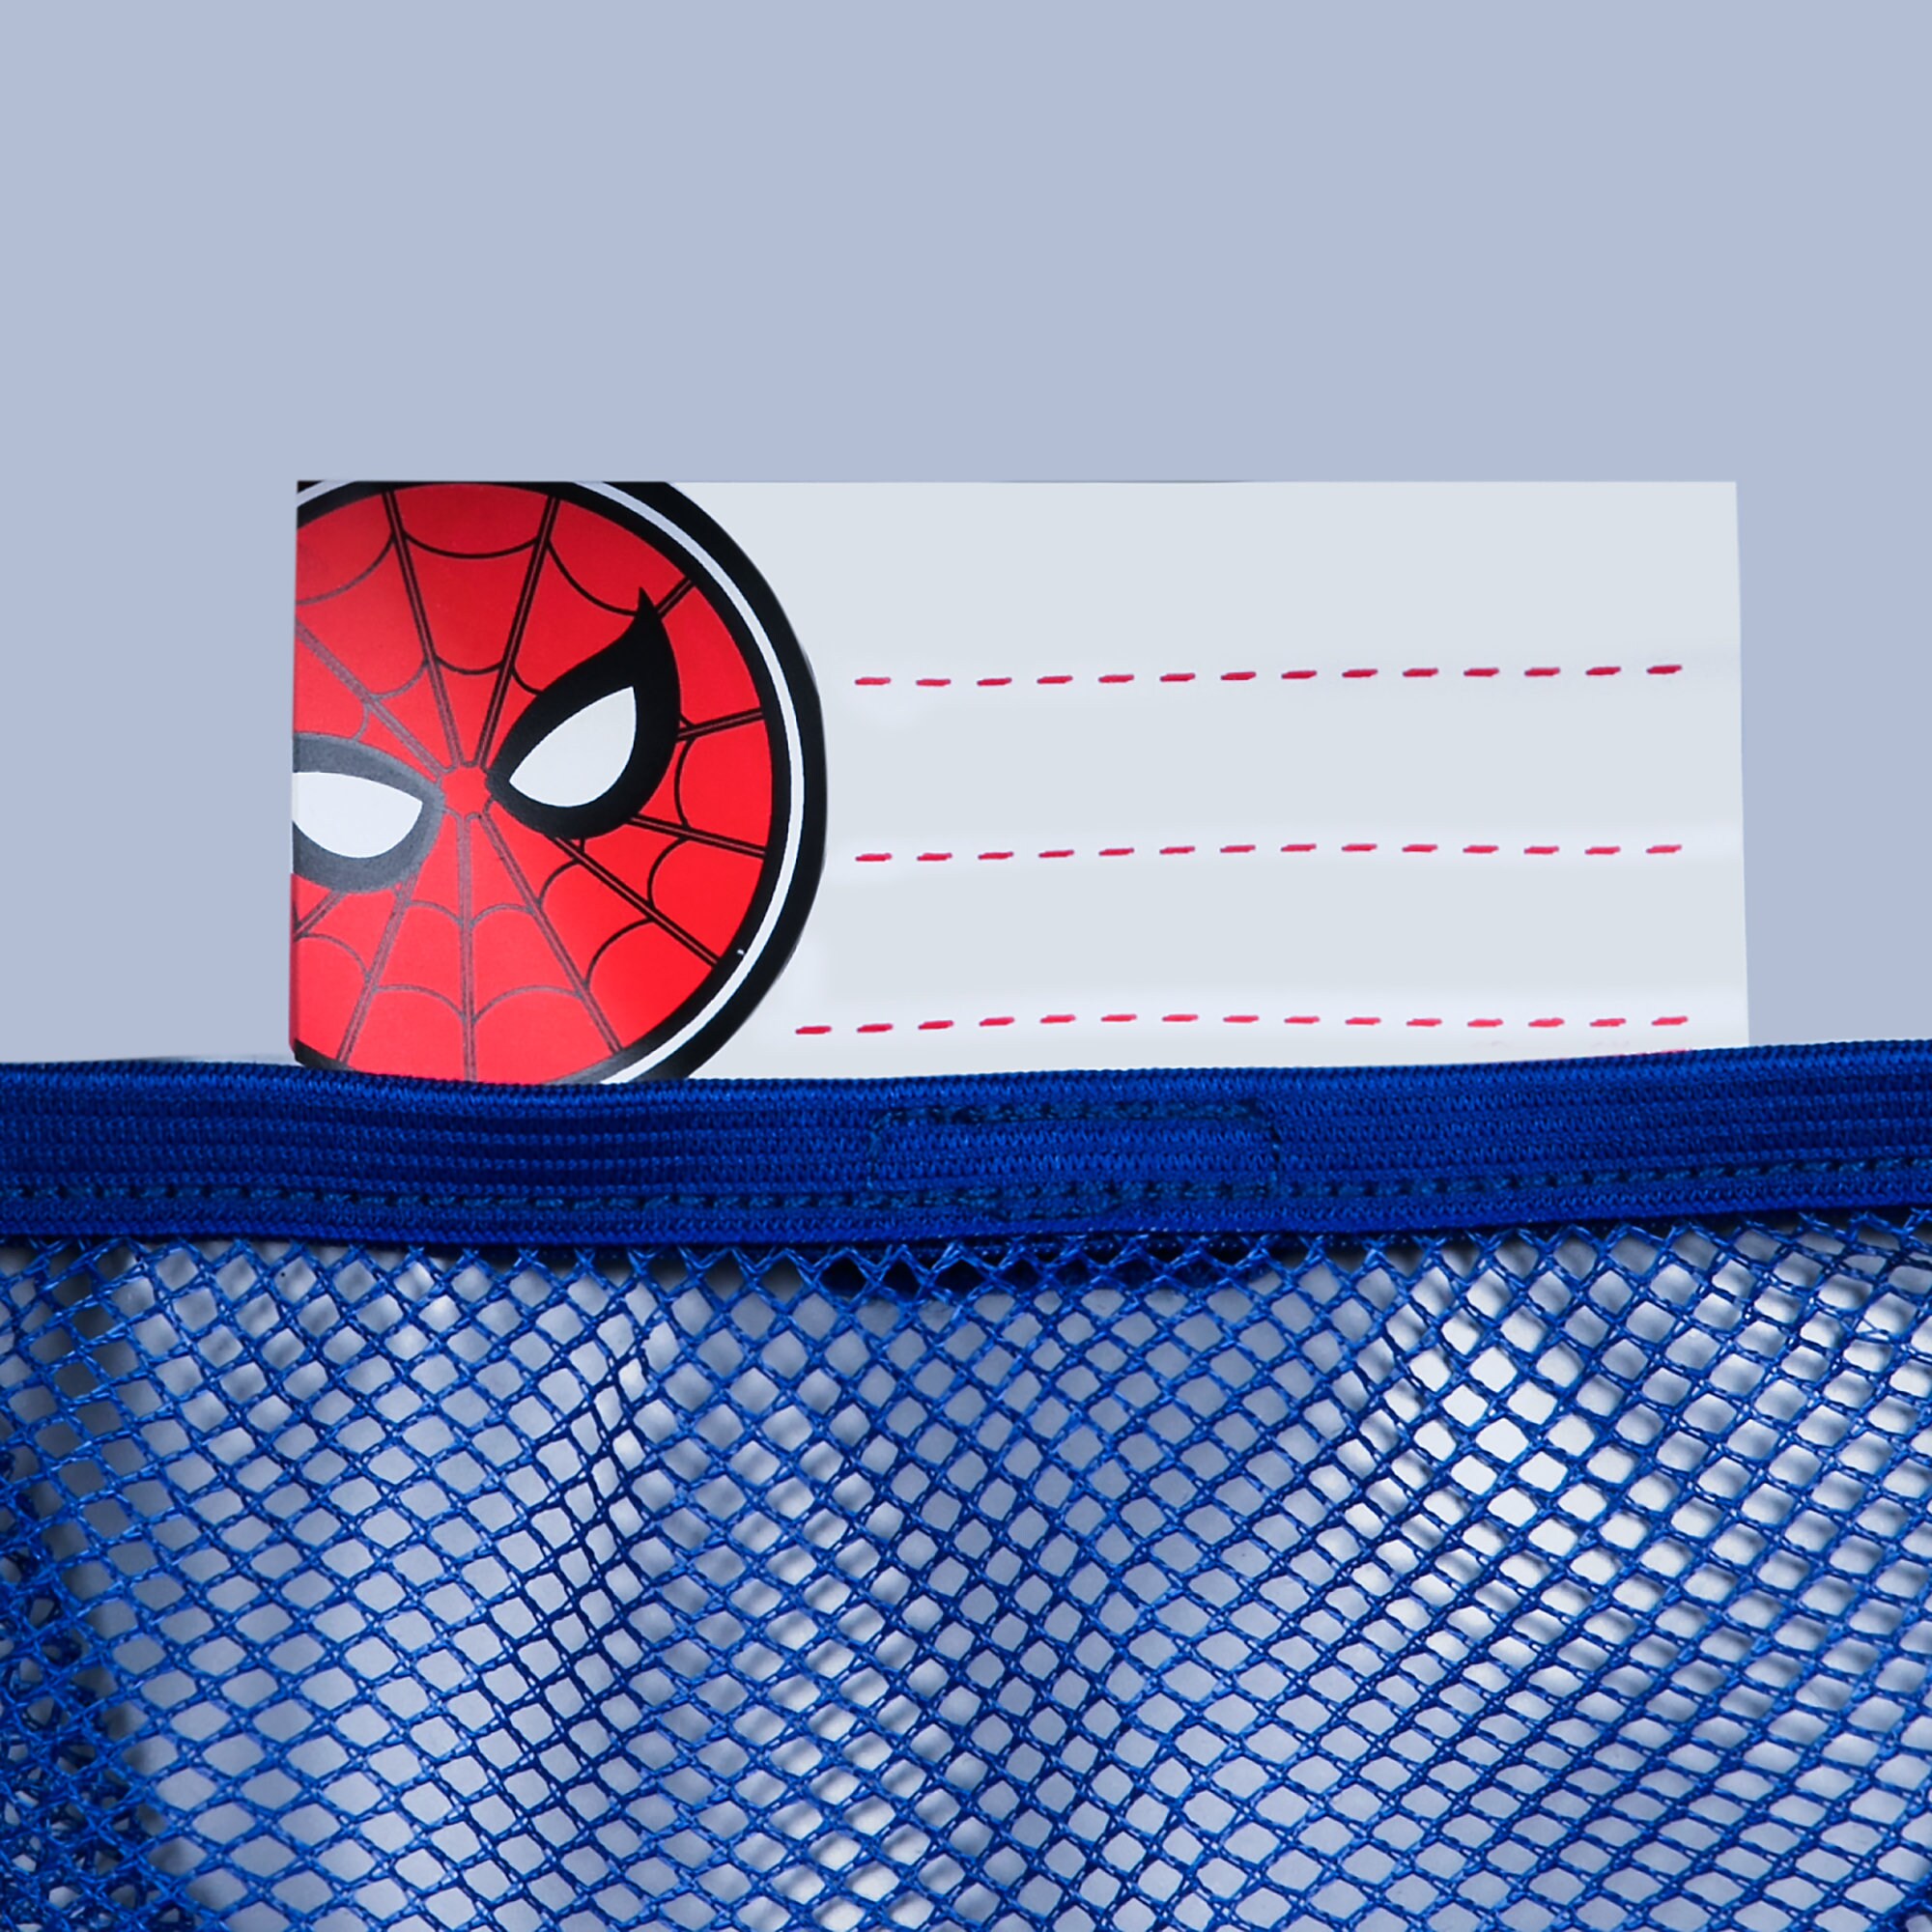 Spider-Man Lunch Box